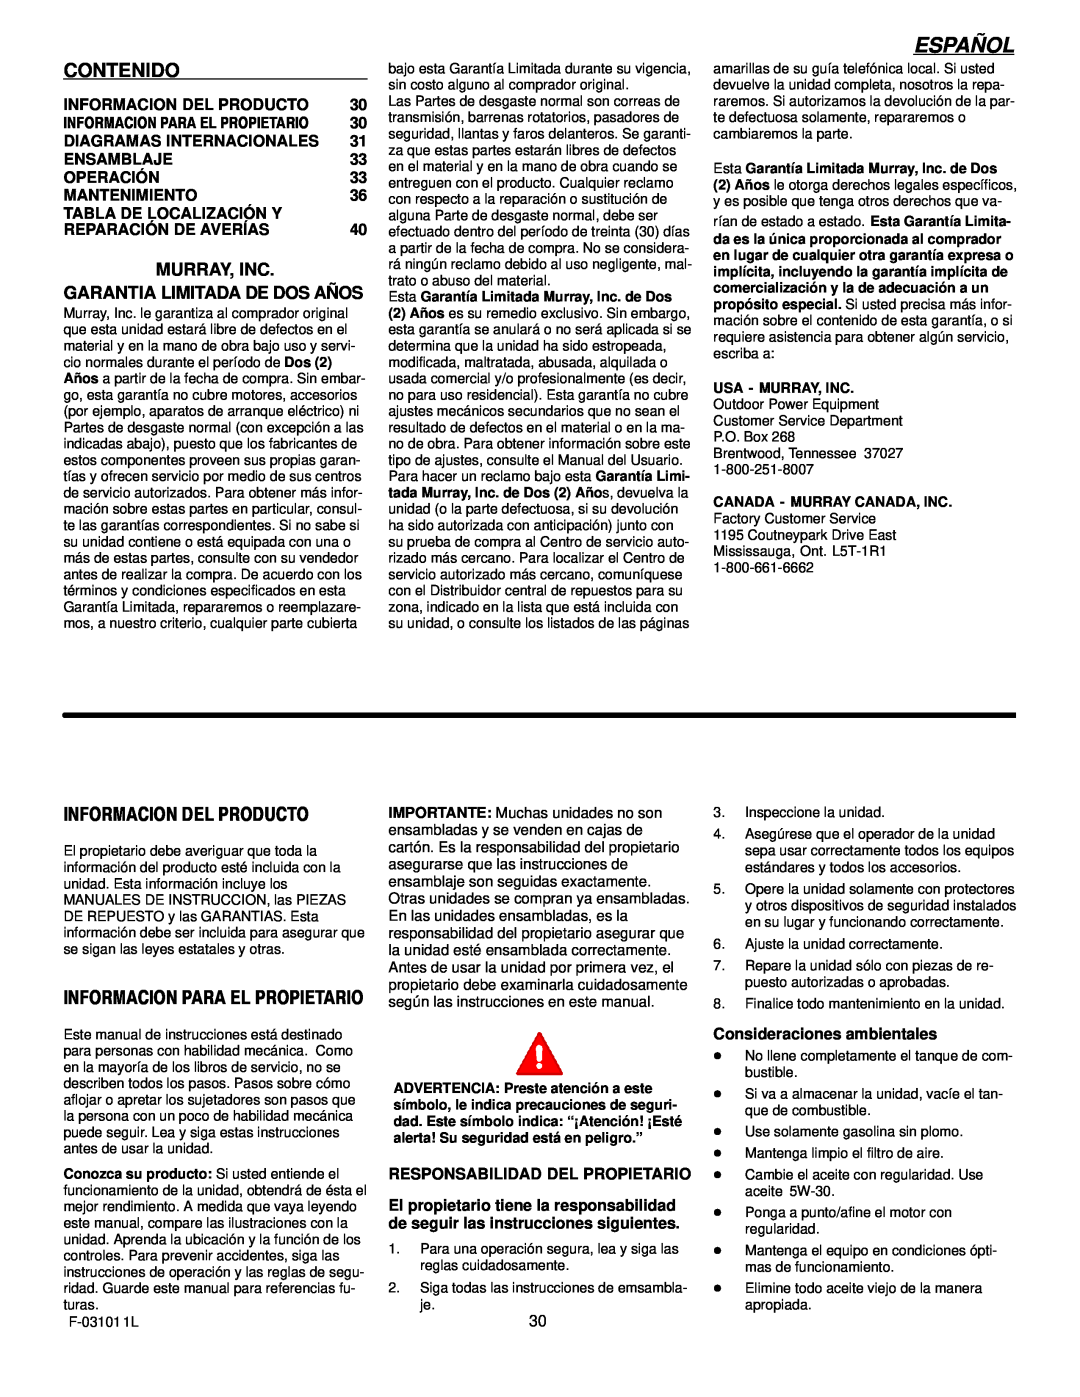 Murray 624504x4C manual Español, Responsabilidad Del Propietario, Consideraciones ambientales 